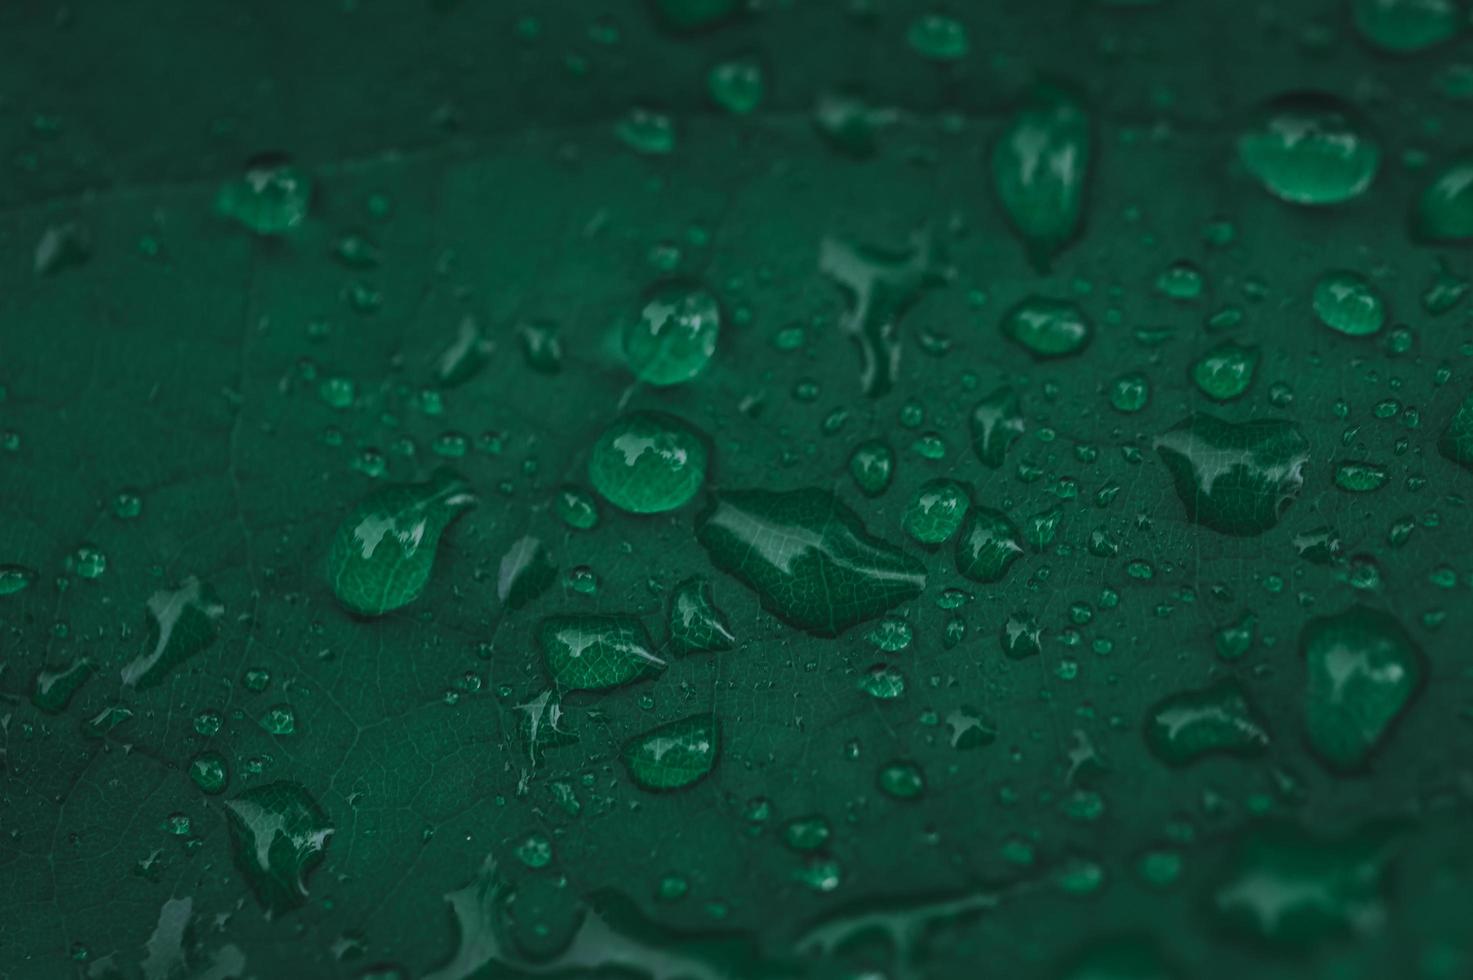 gouttes de pluie sur feuille verte photo